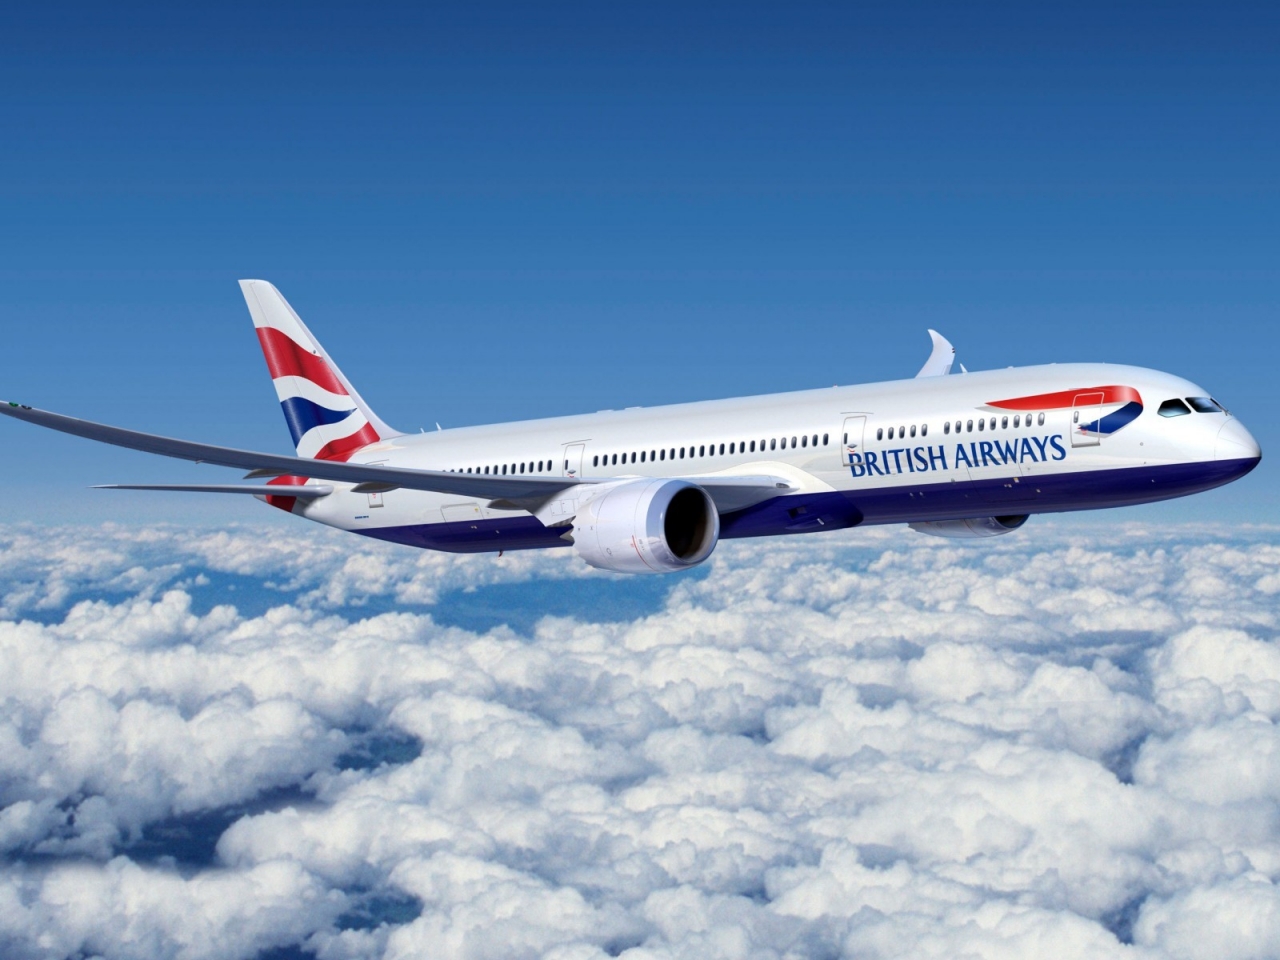 Boeing 777 British Airways for 1280 x 960 resolution